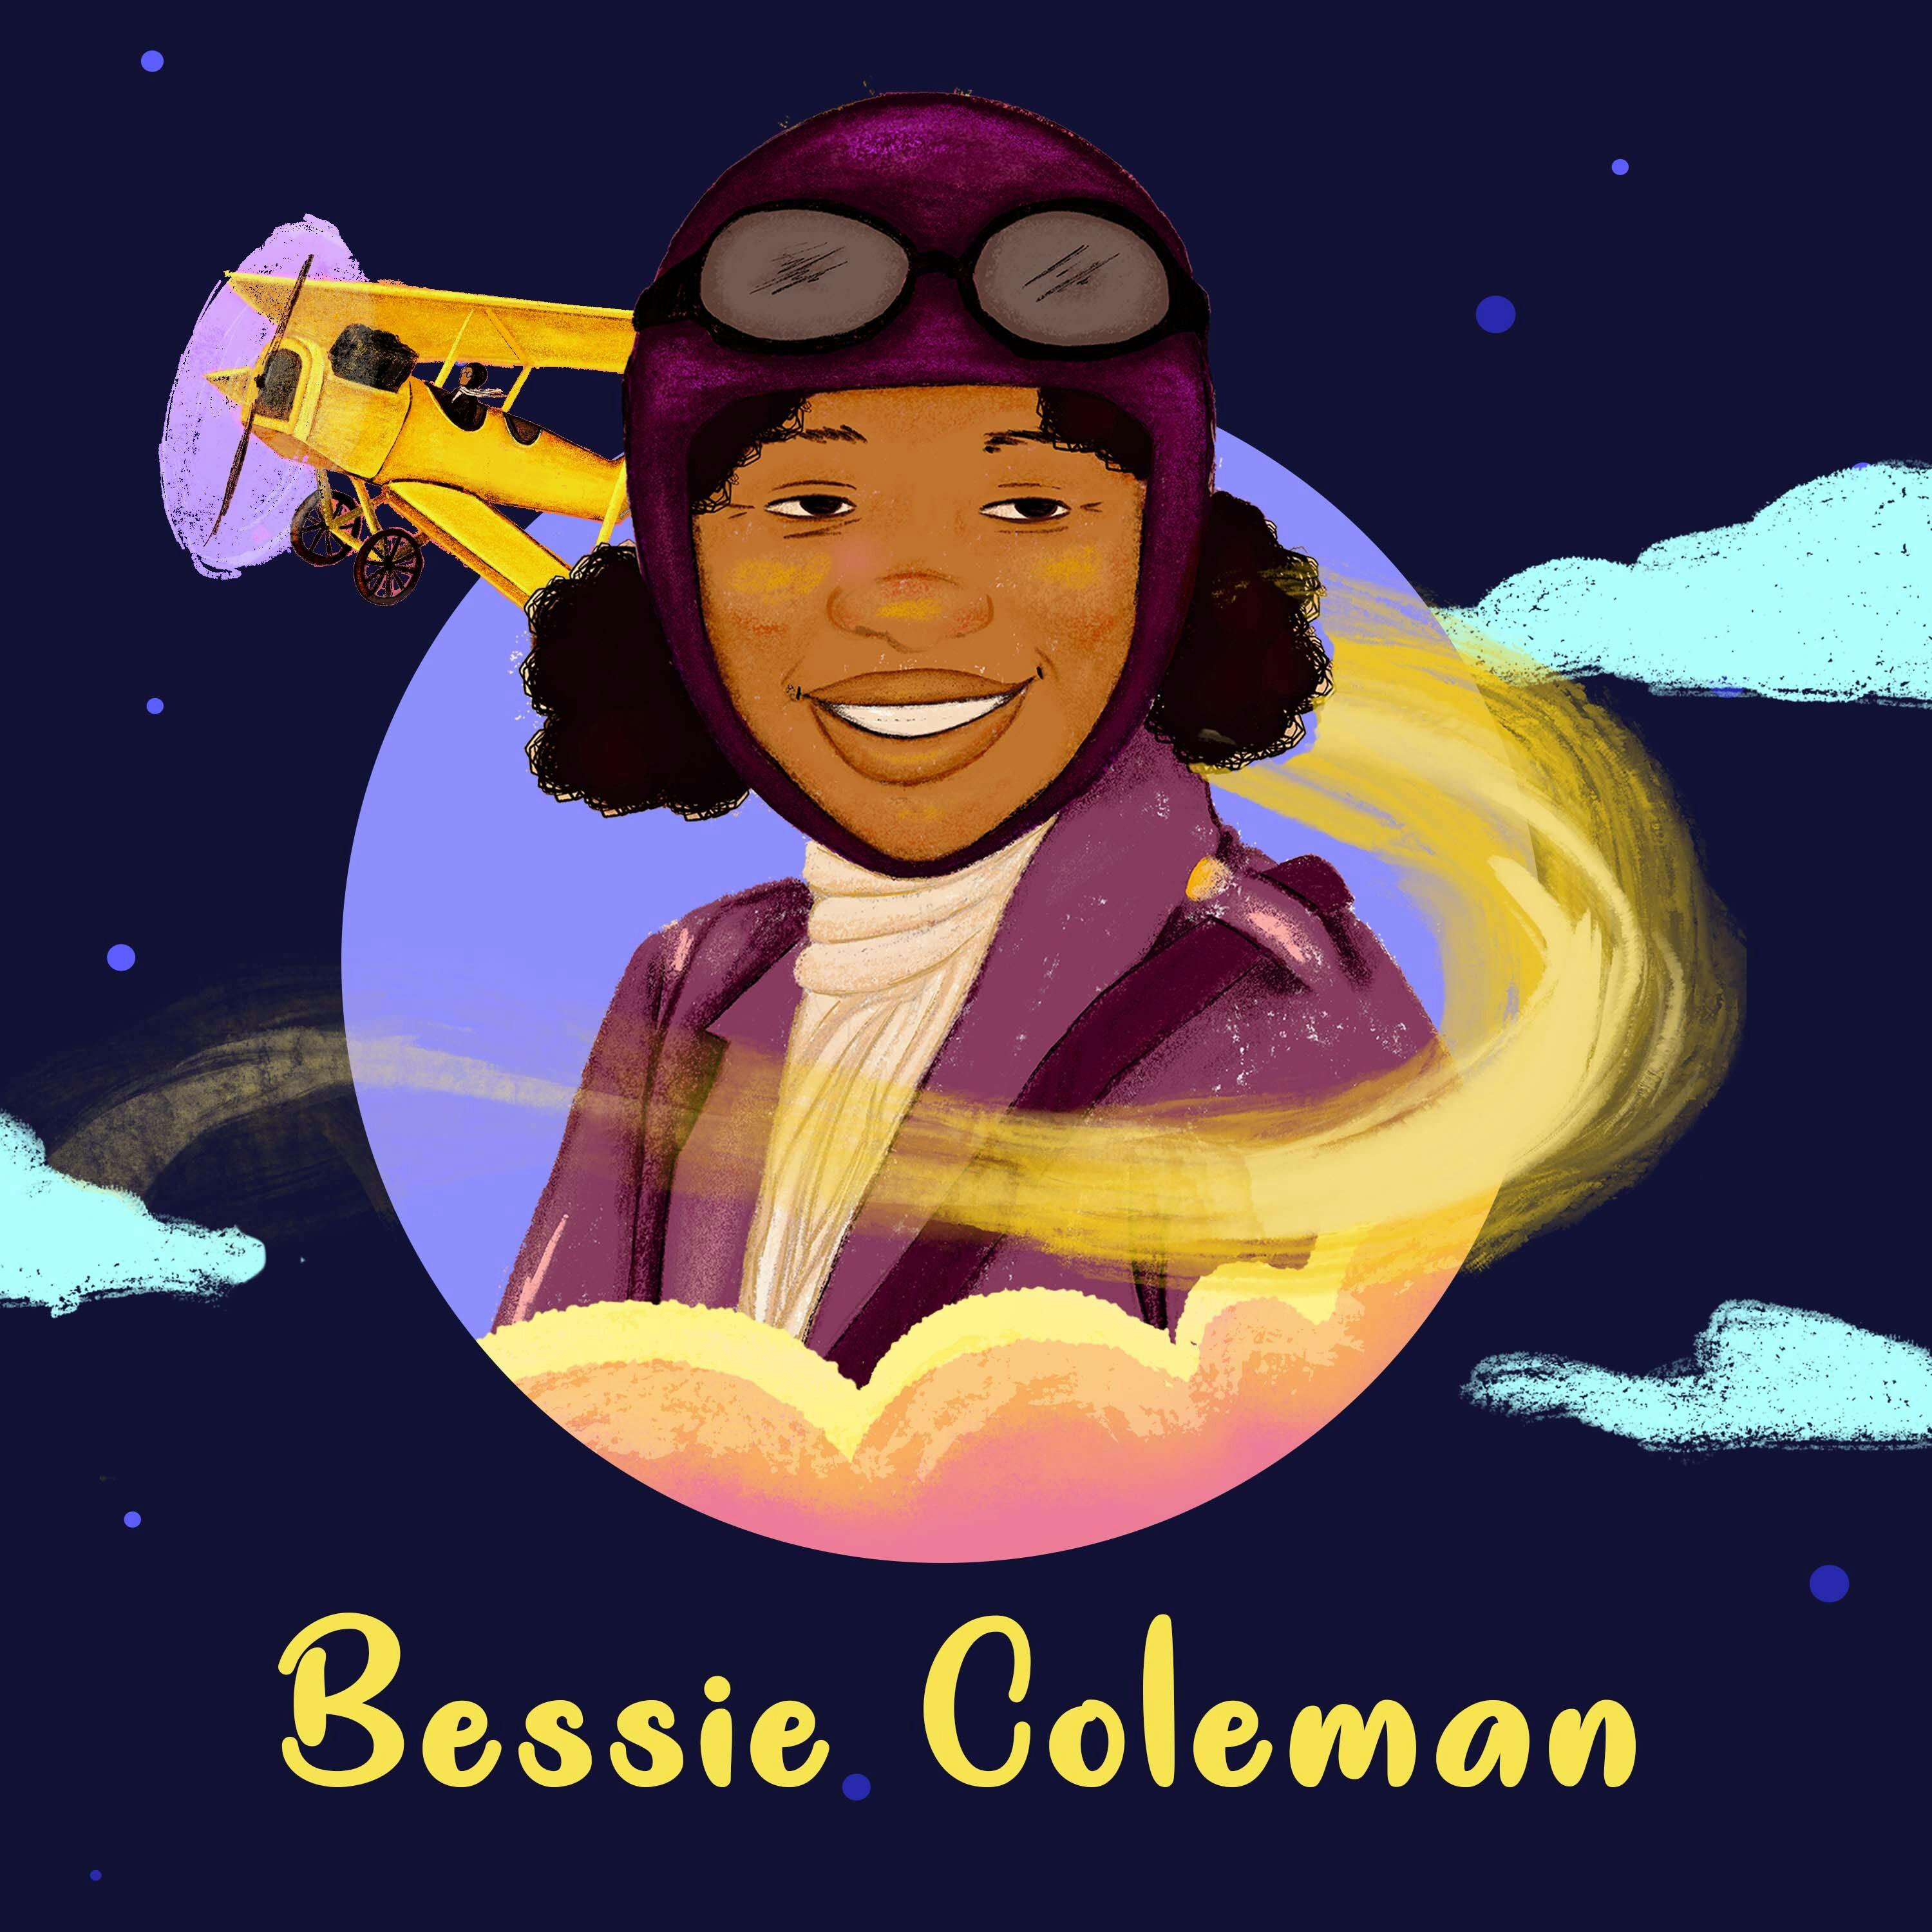 Bessie Coleman: Queen of the Skies